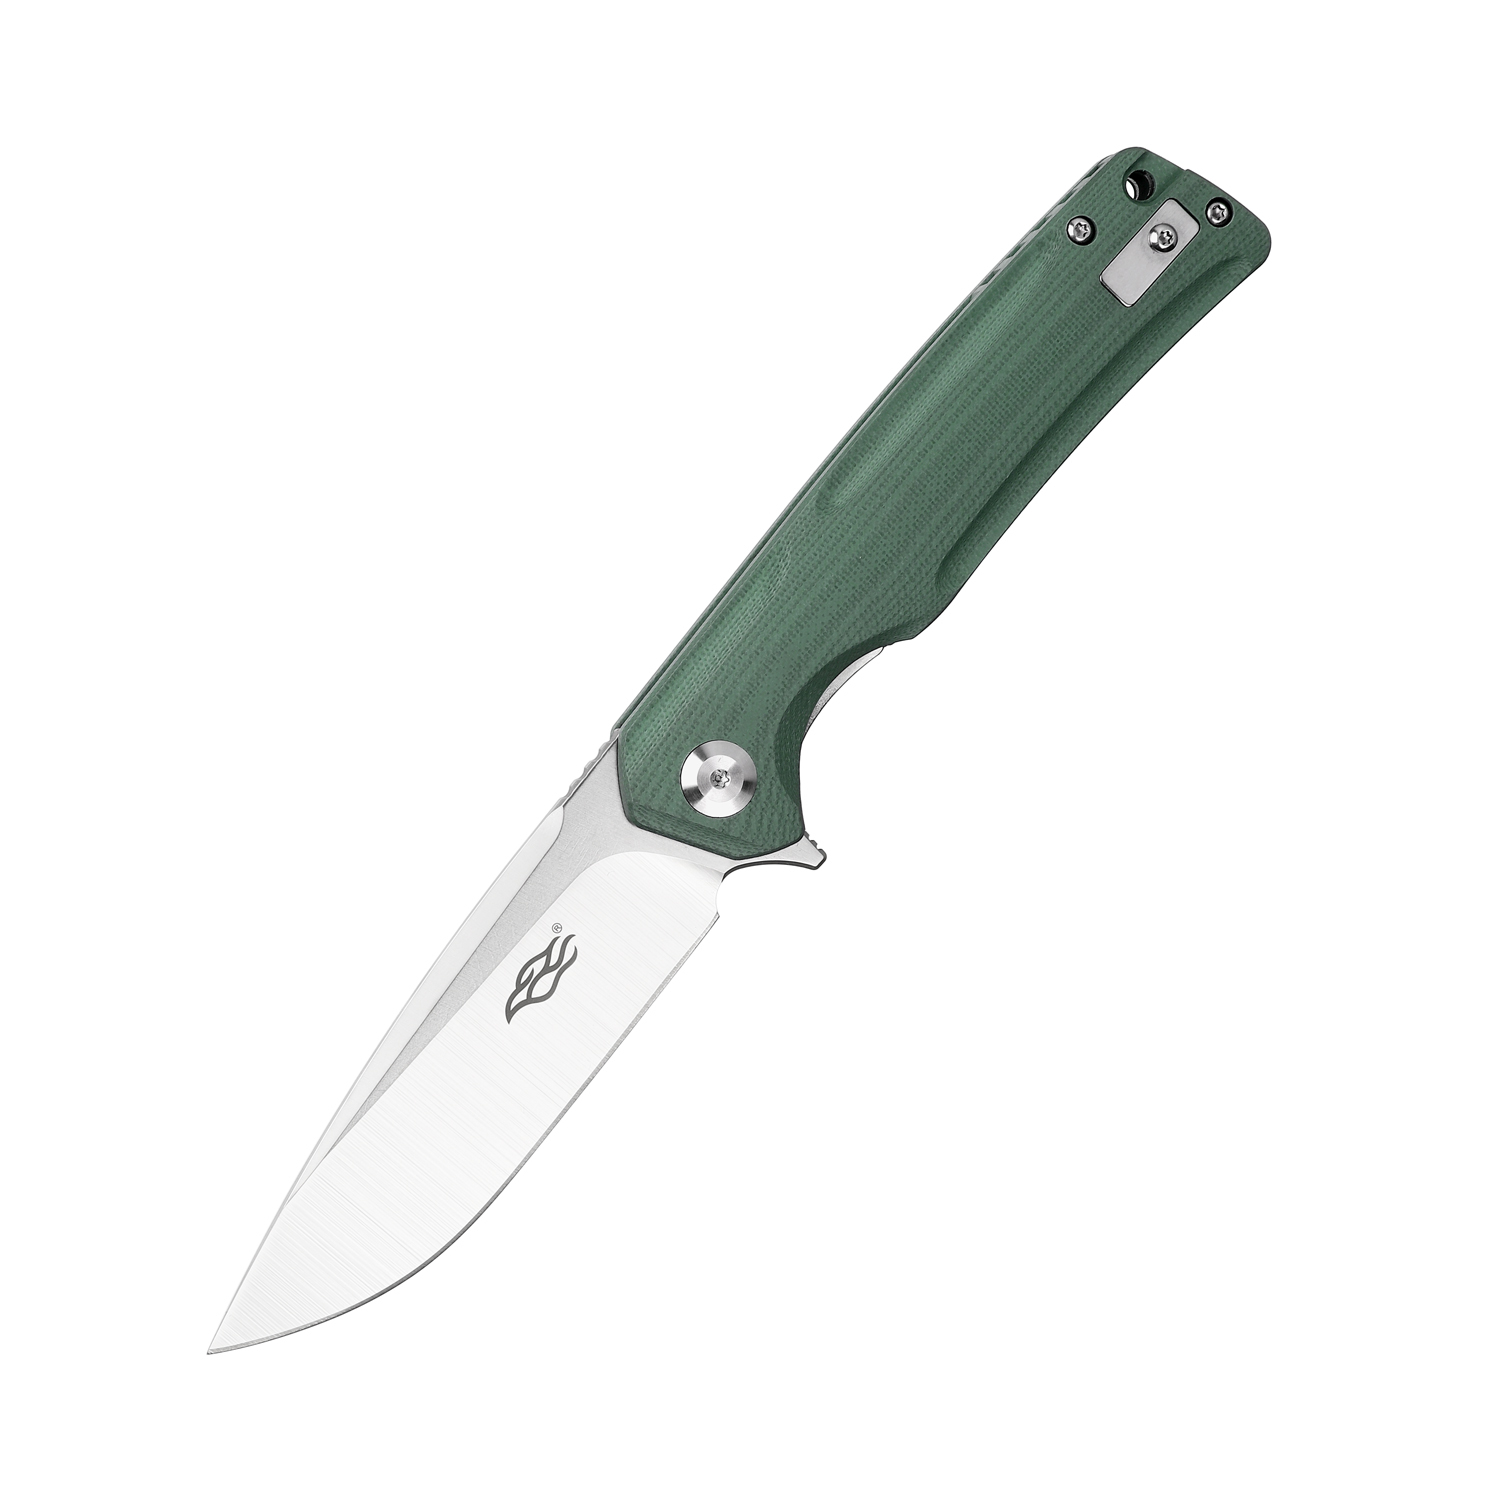 Складной нож Firebird FH91-GB, сталь D2, рукоять G10 зеленая